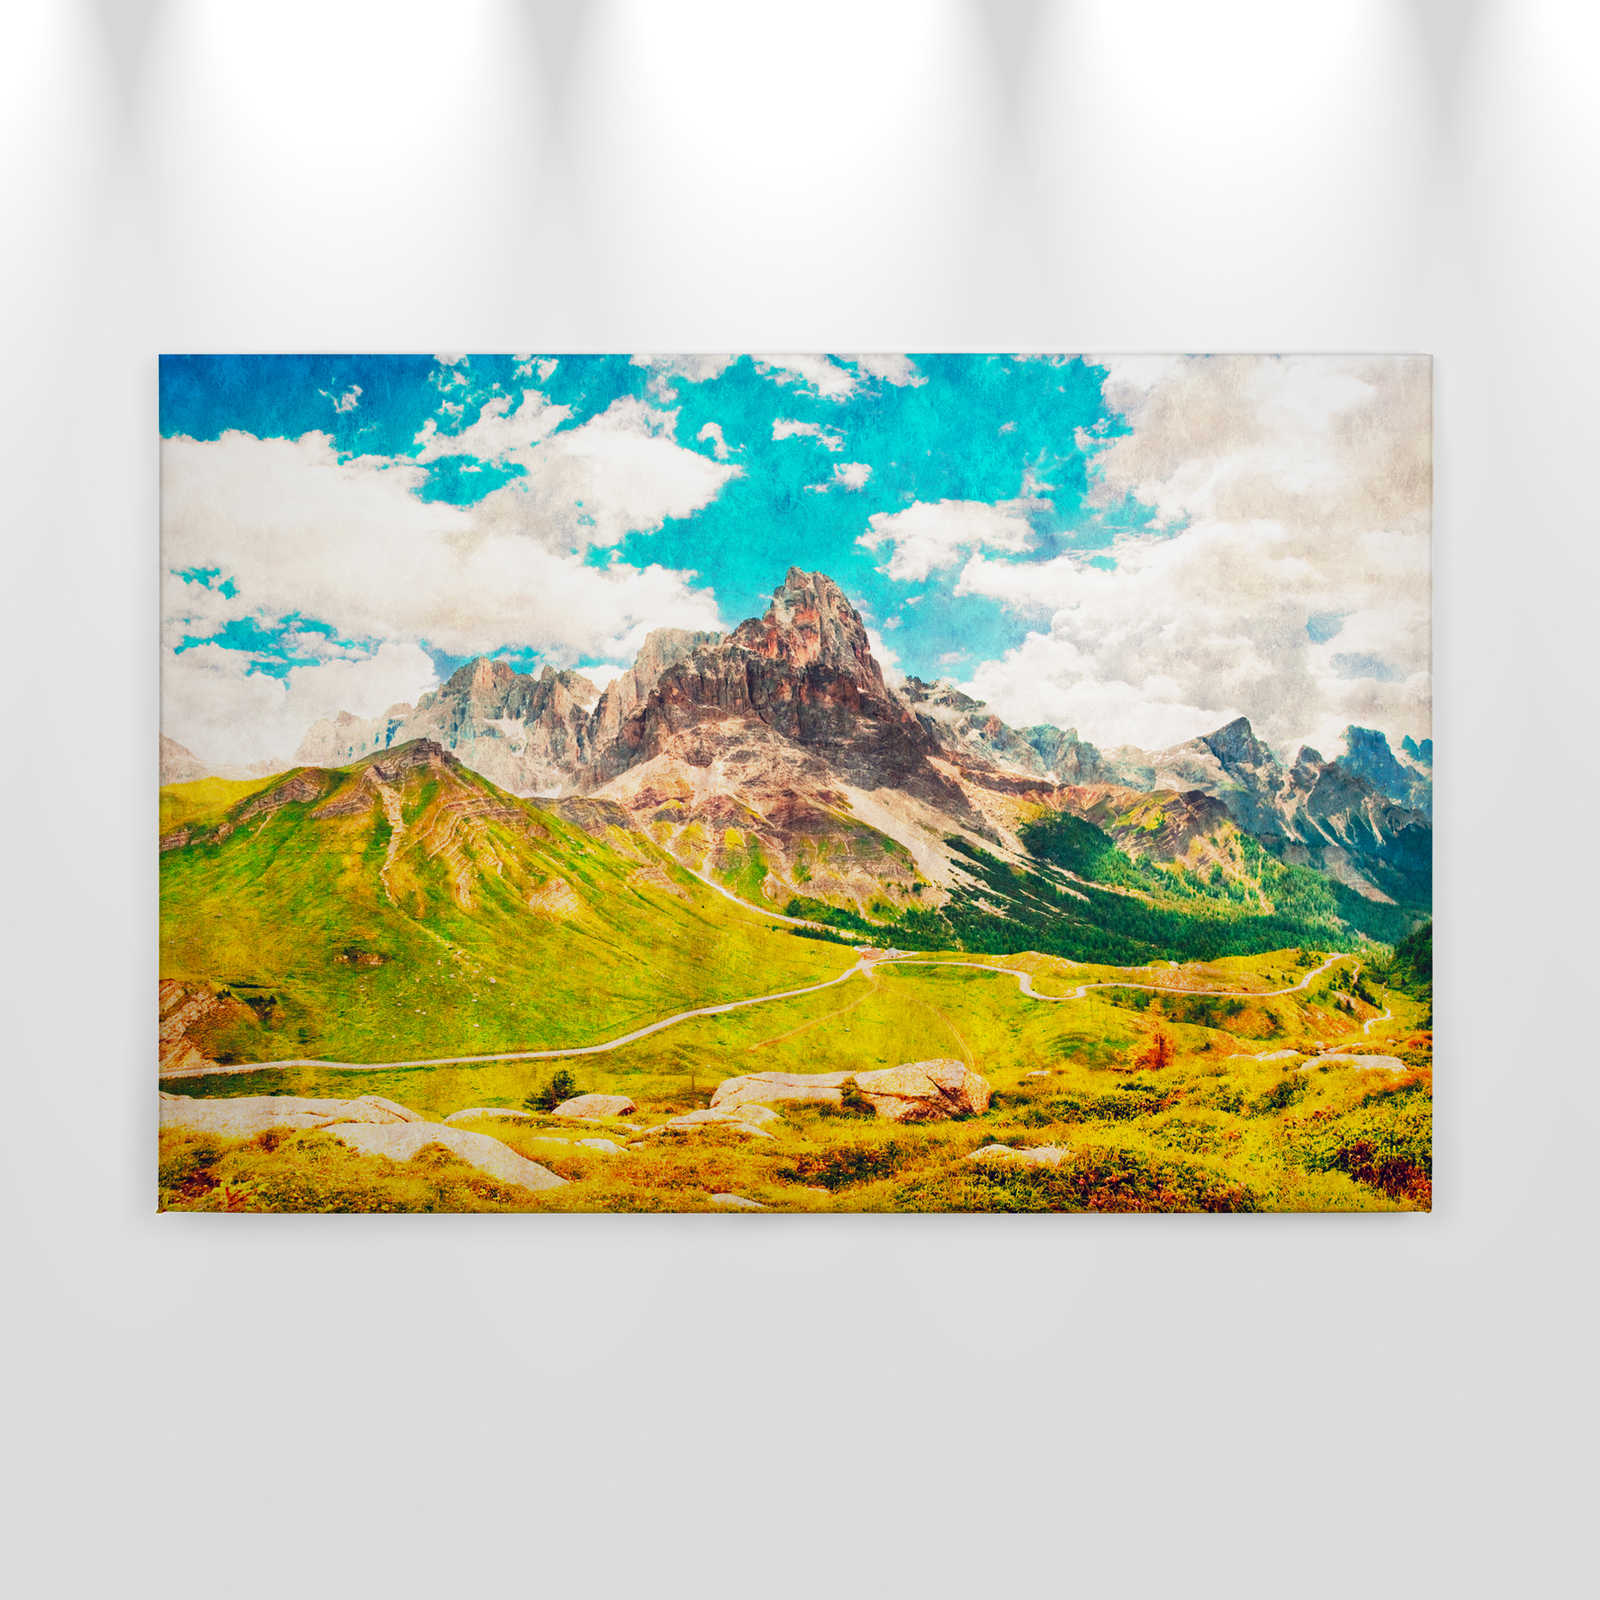             Dolomiti 1 - Toile Dolomites Rétro Photographie - Papier buvard - 0,90 m x 0,60 m
        